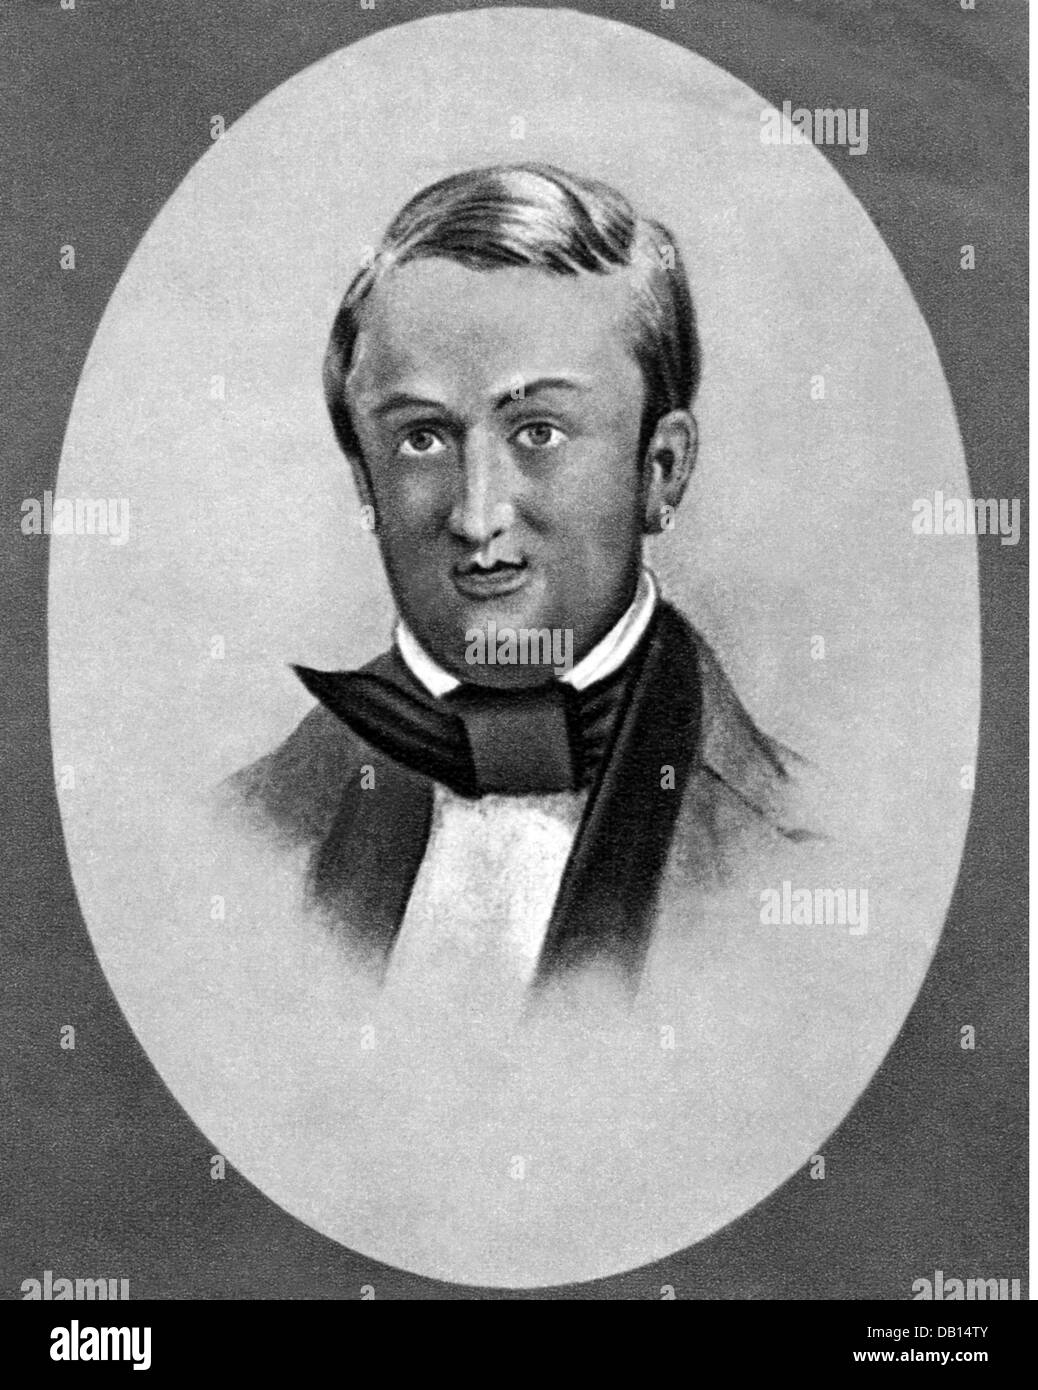 Wagner, Richard, 22.5.1813 - 13.2.1883, compositore tedesco, ritratto, manifesto voluto a causa della sua partecipazione alla rivolta di maggio a Dresda, 16.5.1849, , Foto Stock